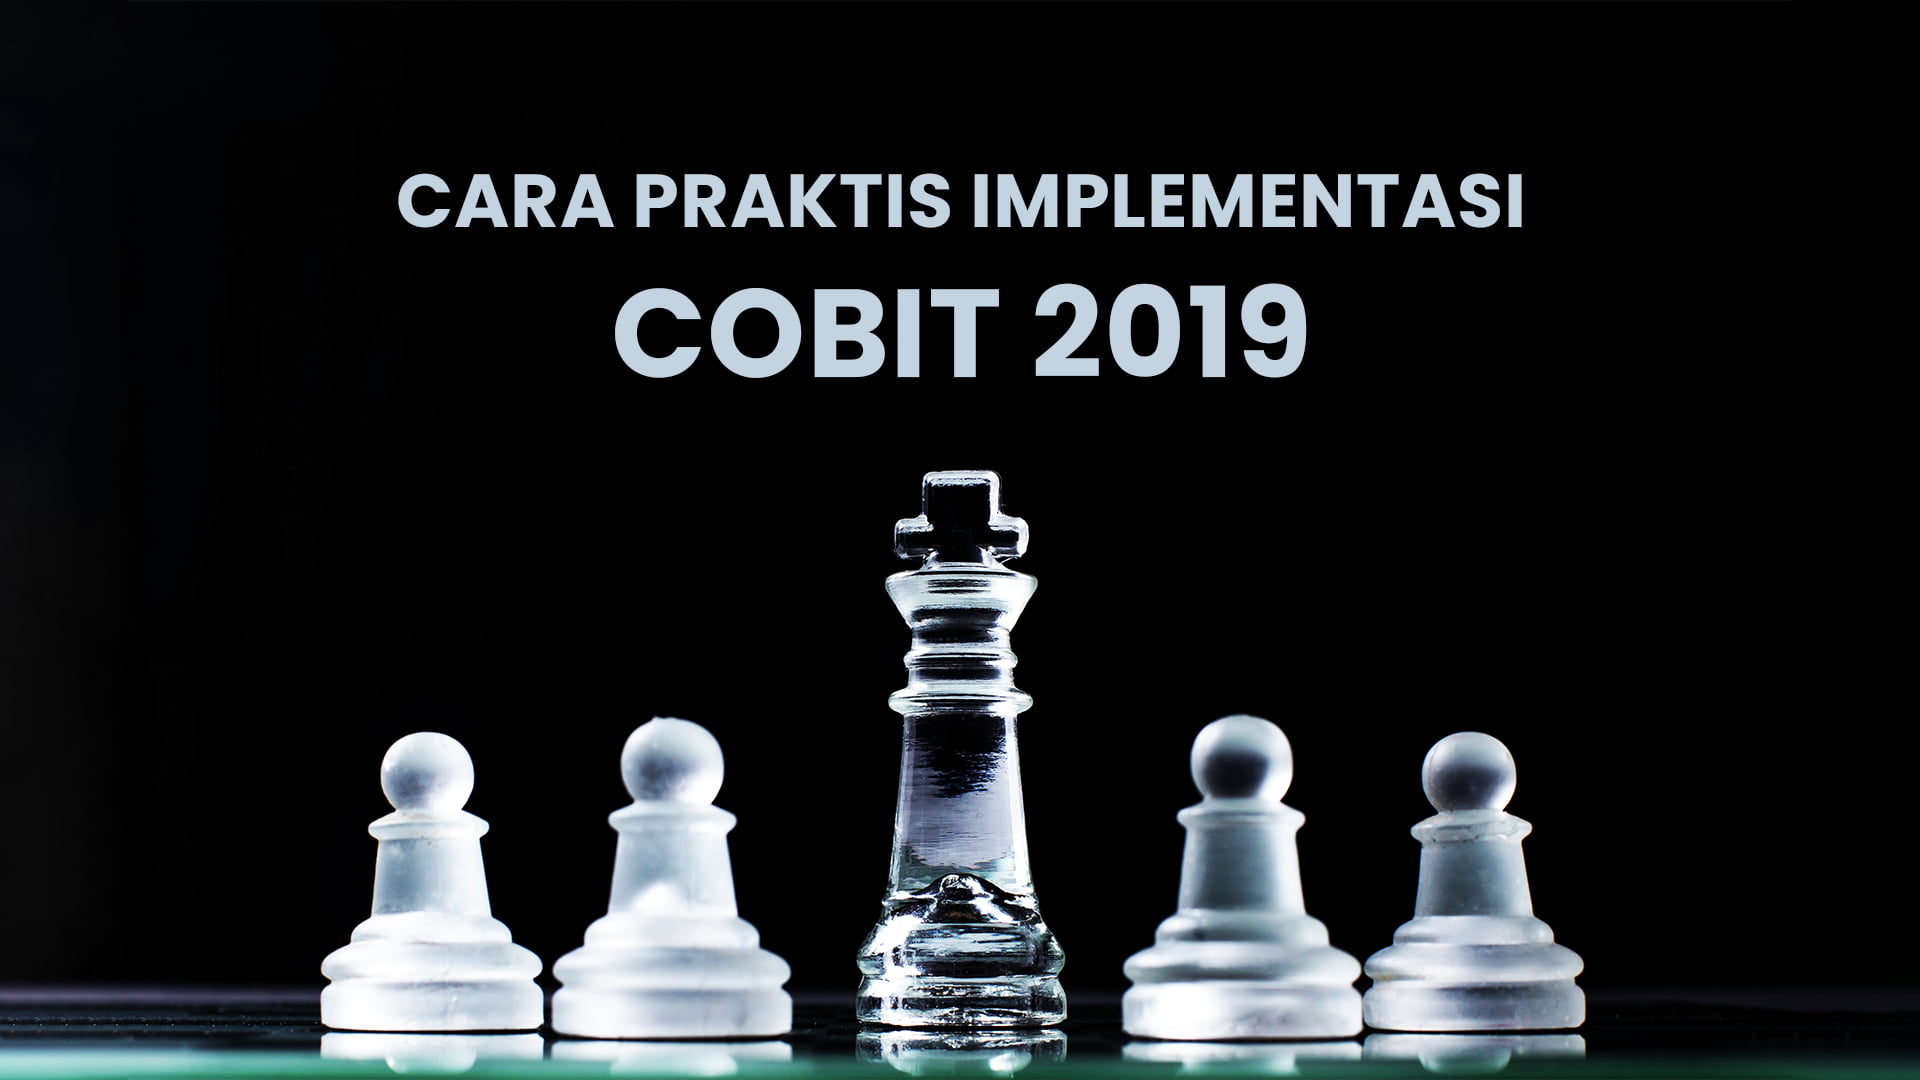 Cara Praktis Implementasi COBIT 2019